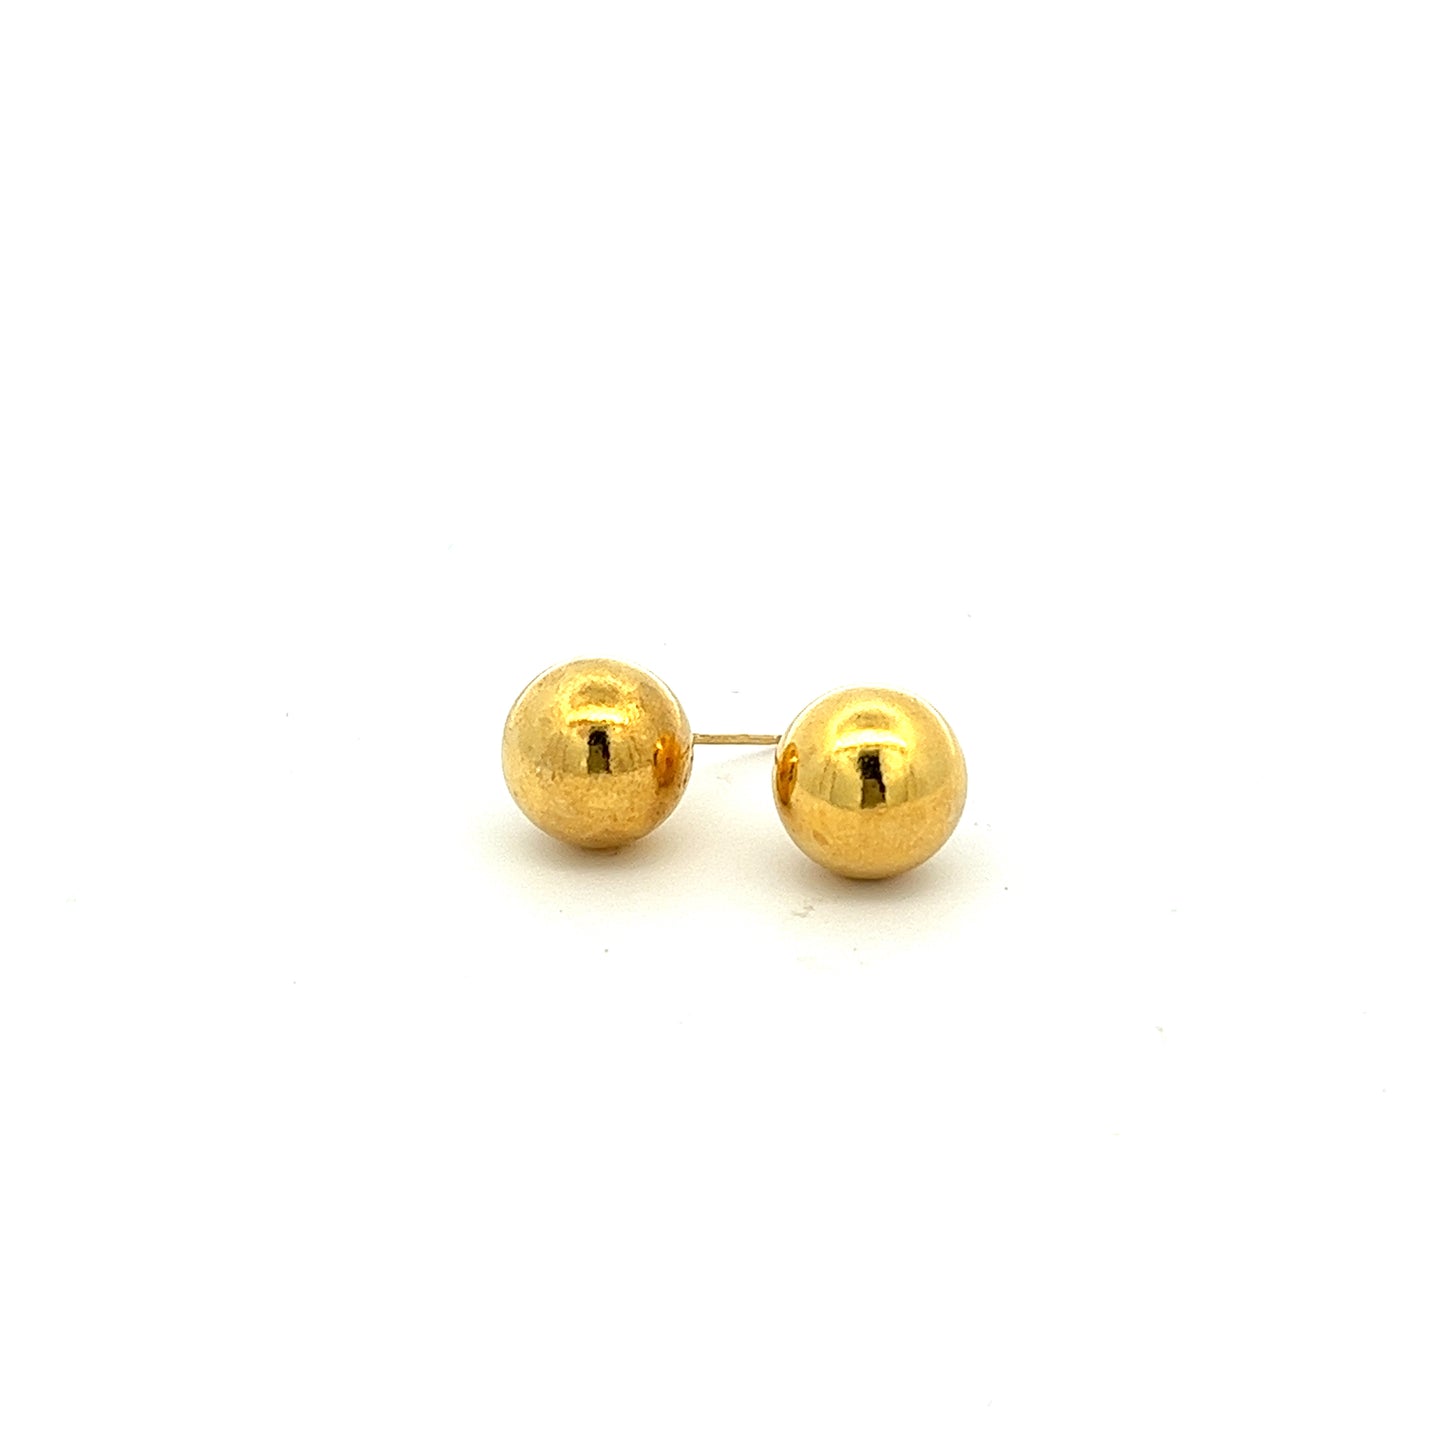 Hudson Stud Earrings in Gold